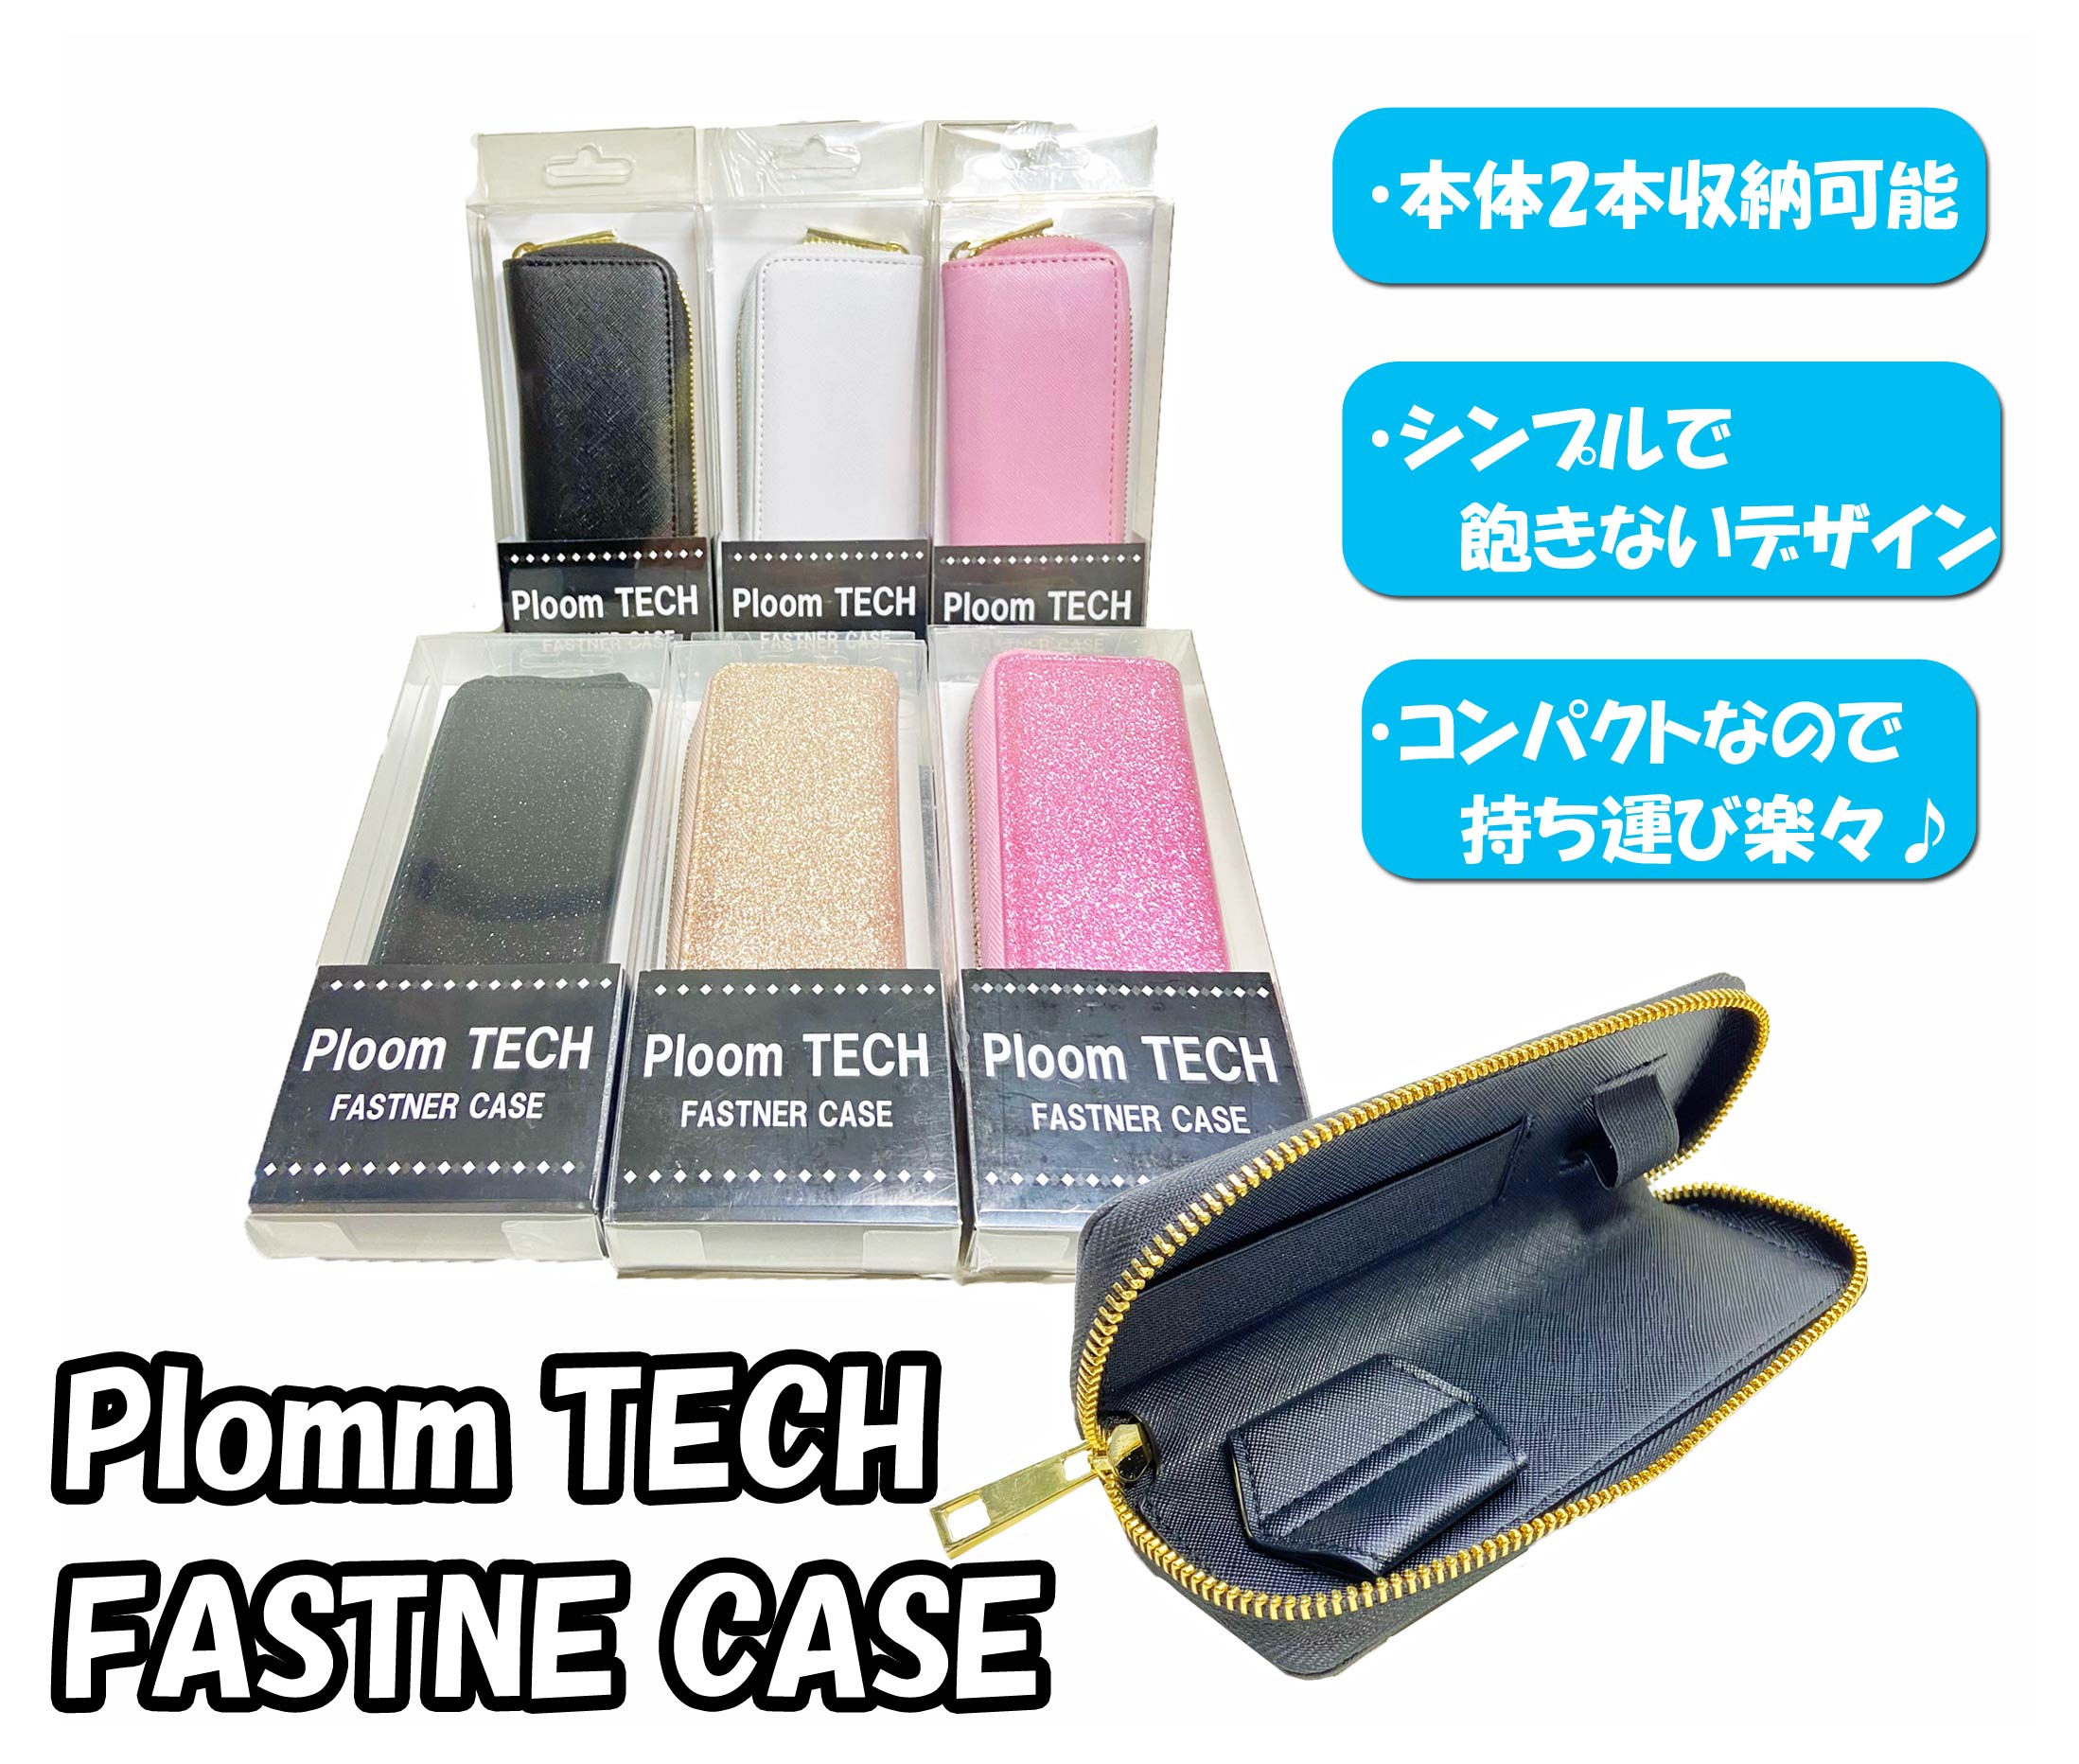 【即納・特価！】Plomm TECH FASTNE CASE プルームテック 電子タバコ ケース